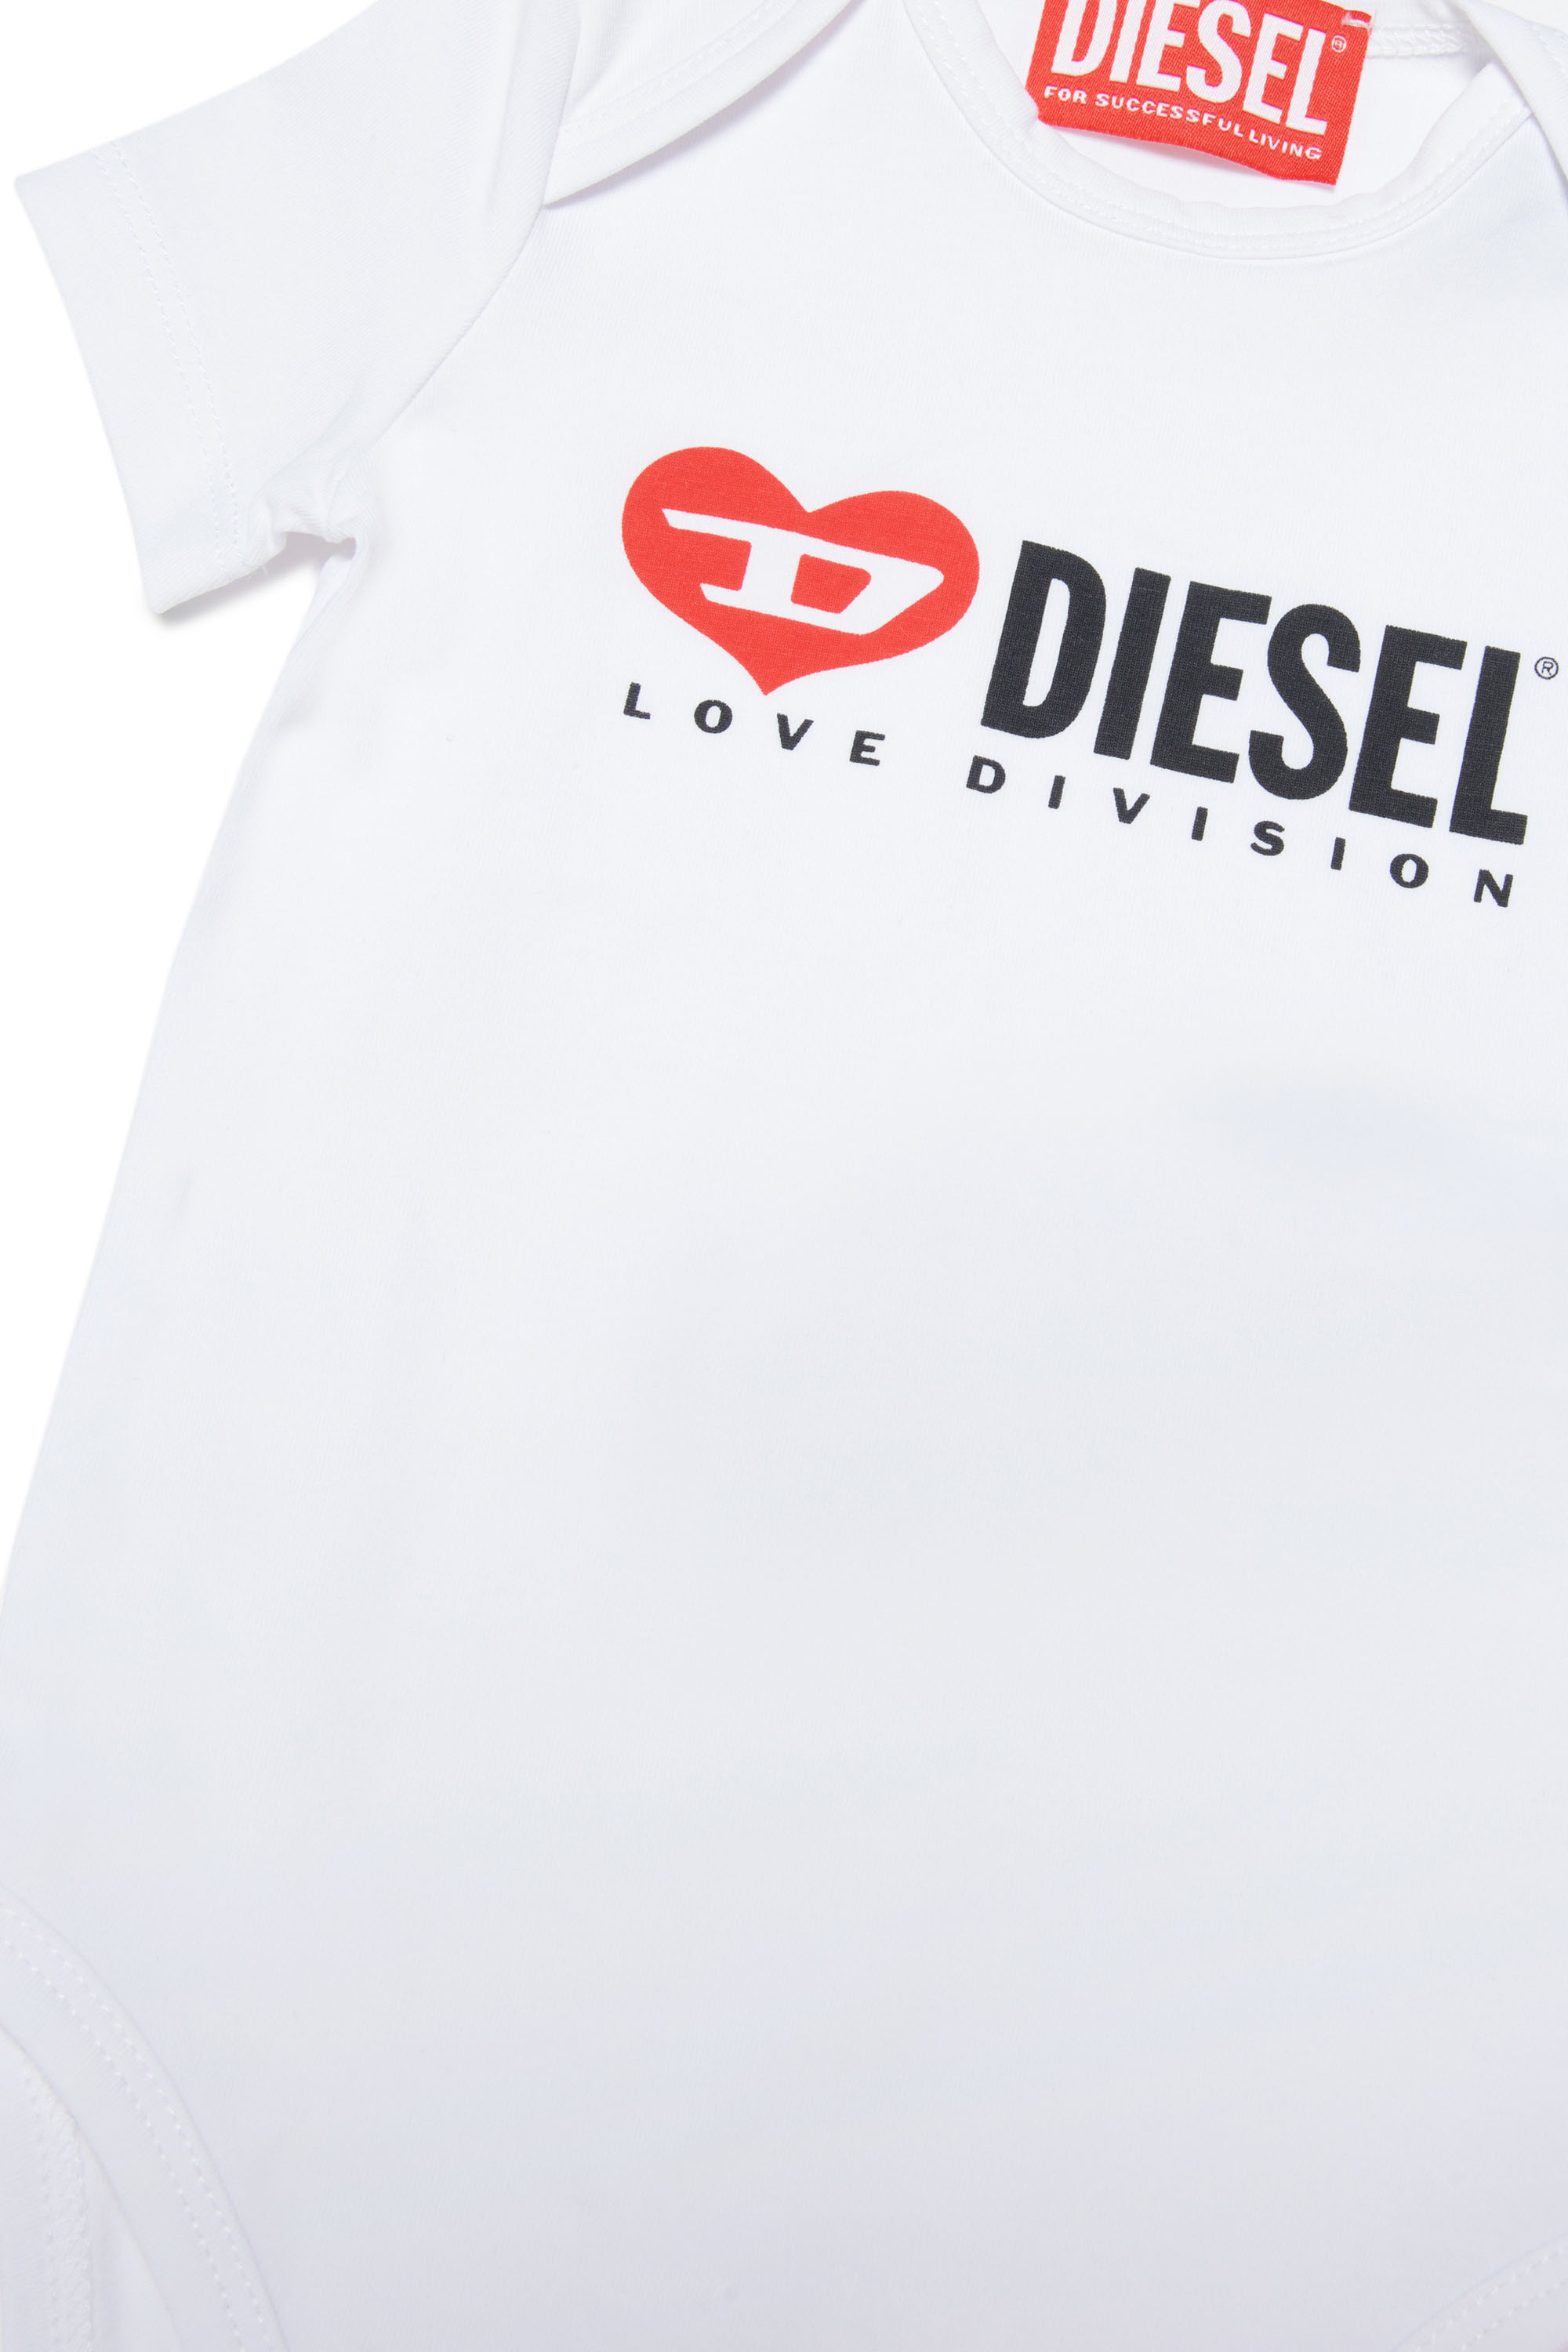 Diesel - ULOVE-NB, Blanc - Image 3